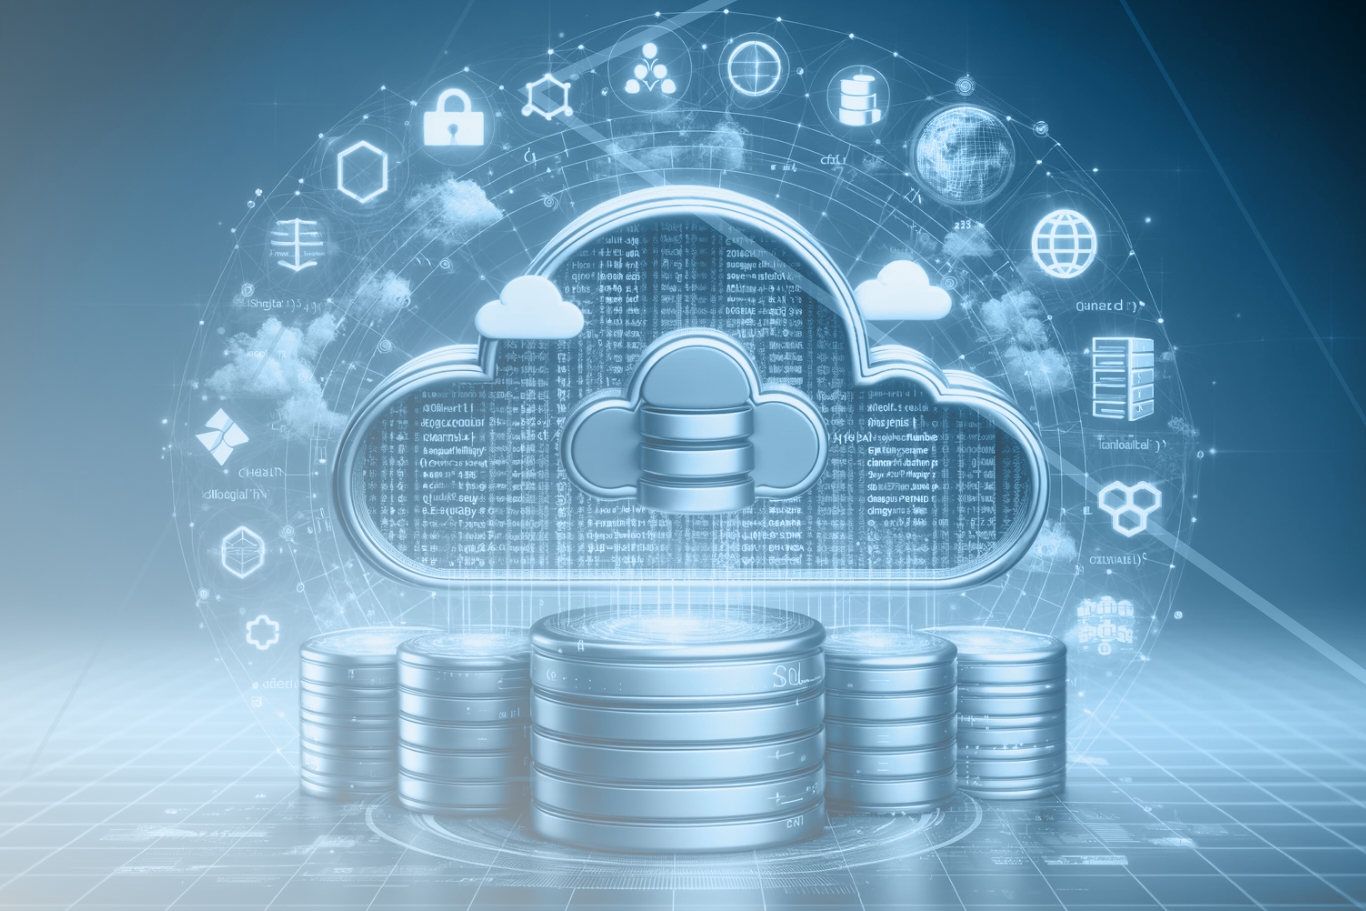 SQL en la nube, bases de datos cloud, servicios cloud, desarrollo de software, transformación digital, seguridad de datos, integración de servicios